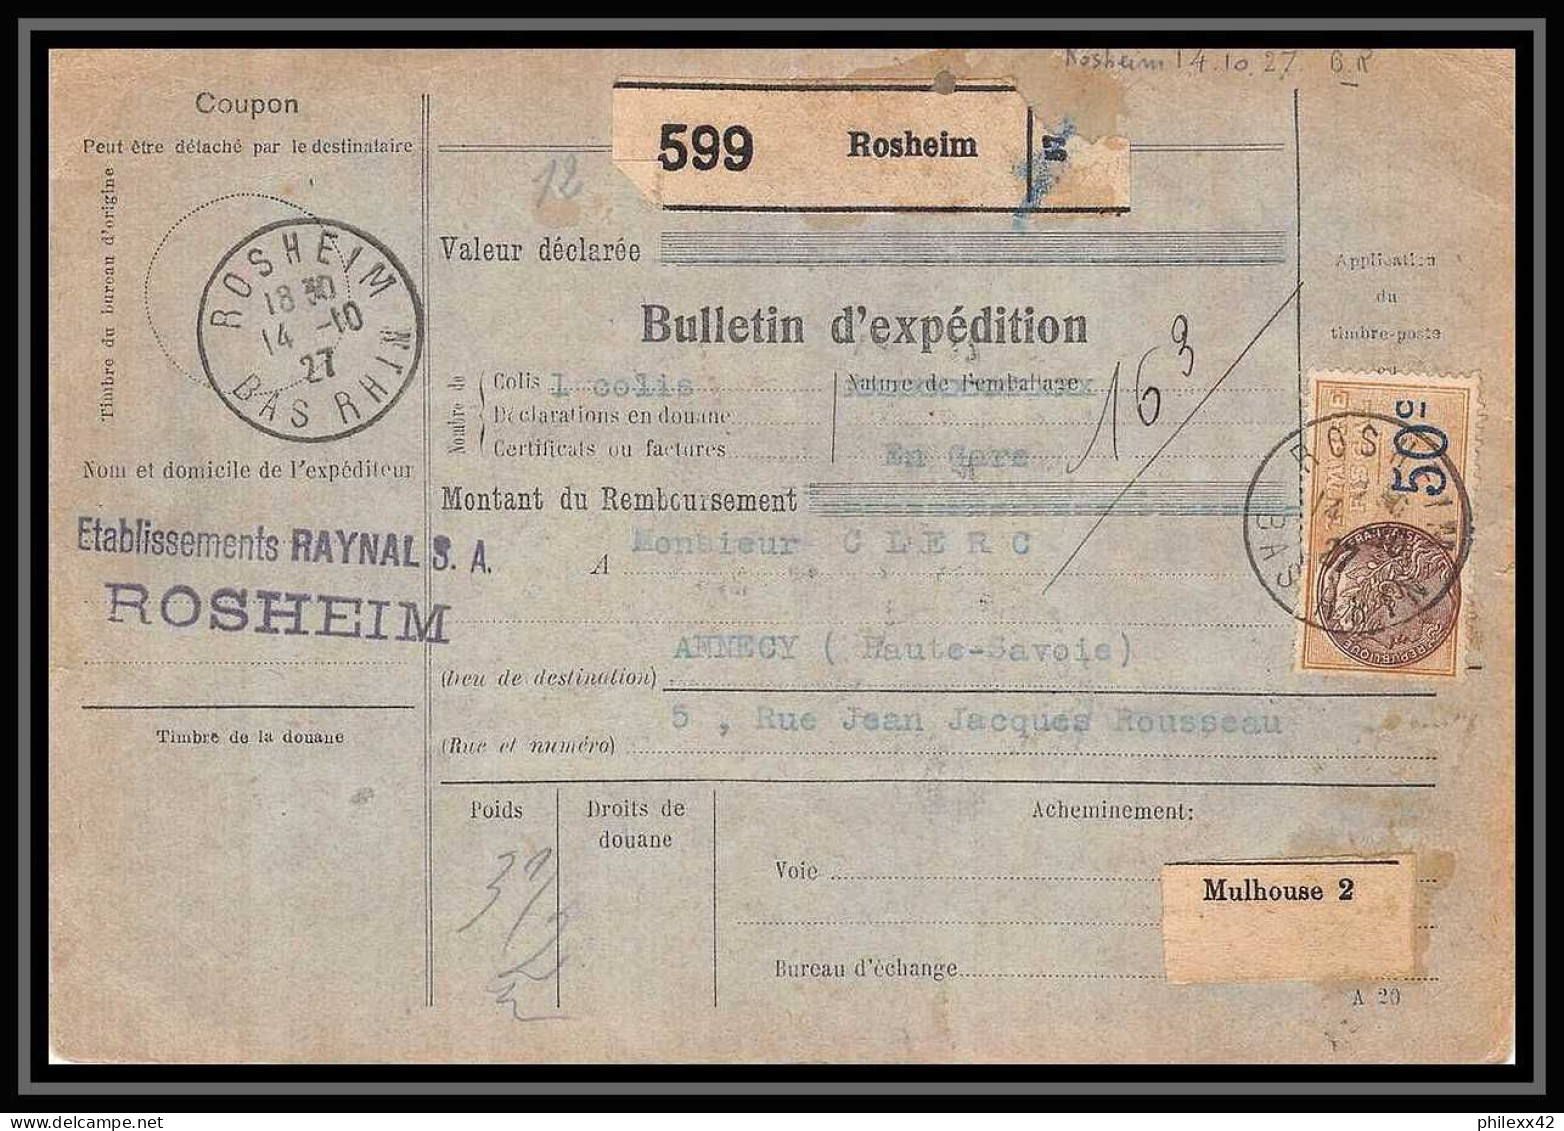 25280/ Bulletin D'expédition France Colis Postaux Fiscal Bas Rhin Rosheim Pour Annecy Haute Savoie 1927 Merson N°145 - Covers & Documents